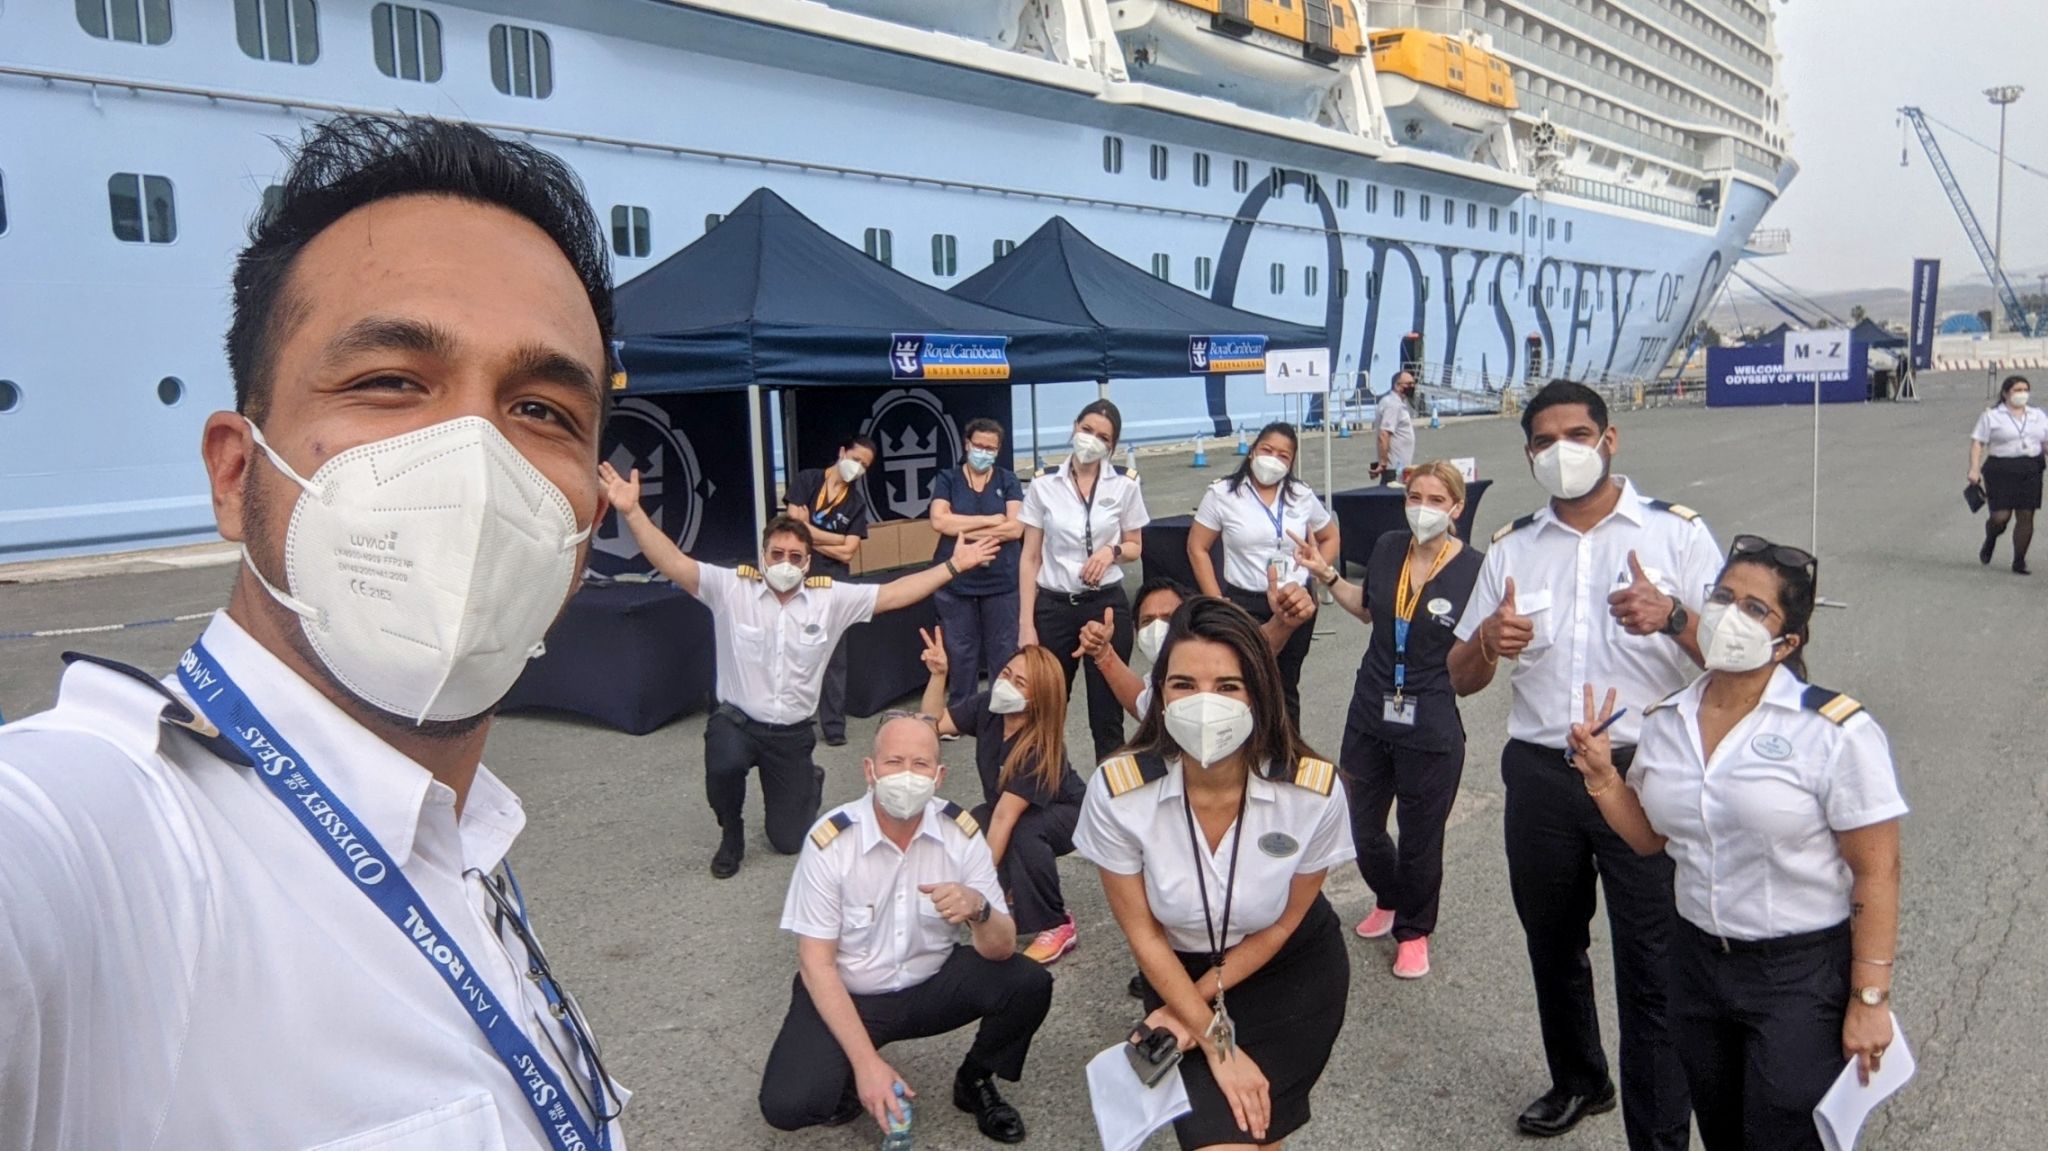 Royal Caribbean begins vaccinating crew members in Miami | Royal Caribbean Blog